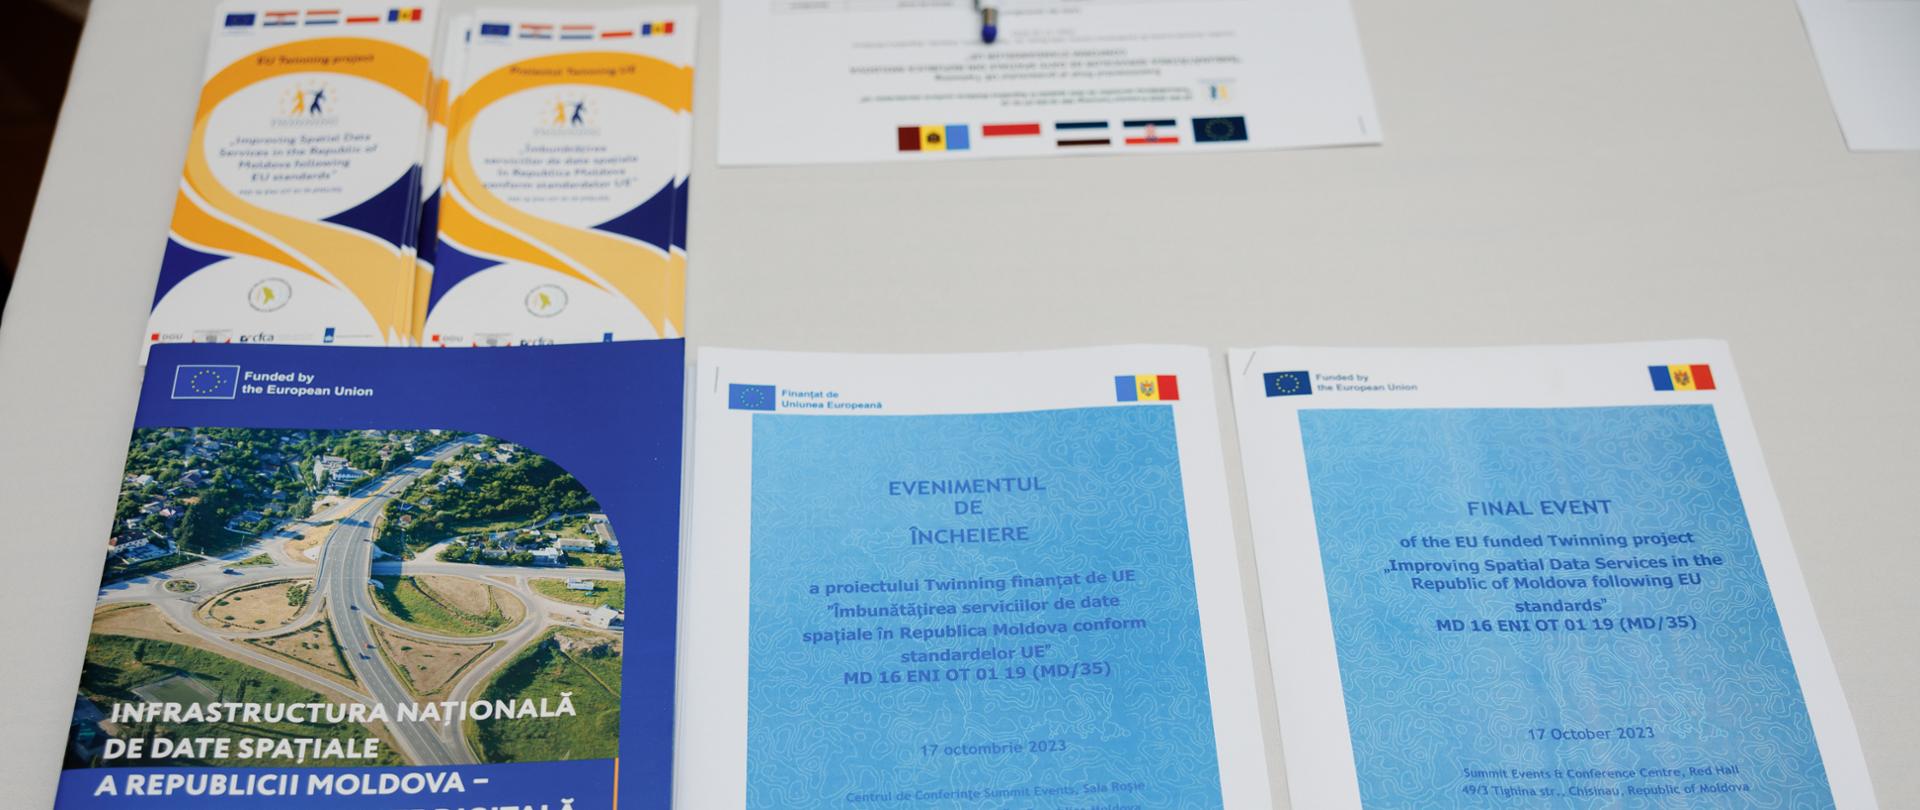 Foldery dotyczące konferencji kończącej rozpoczęty we wrześniu 2020 roku projekt twinningowy Udoskonalenie usług wykorzystujących dane przestrzenne Republiki Mołdawii zgodnie ze standardami UE